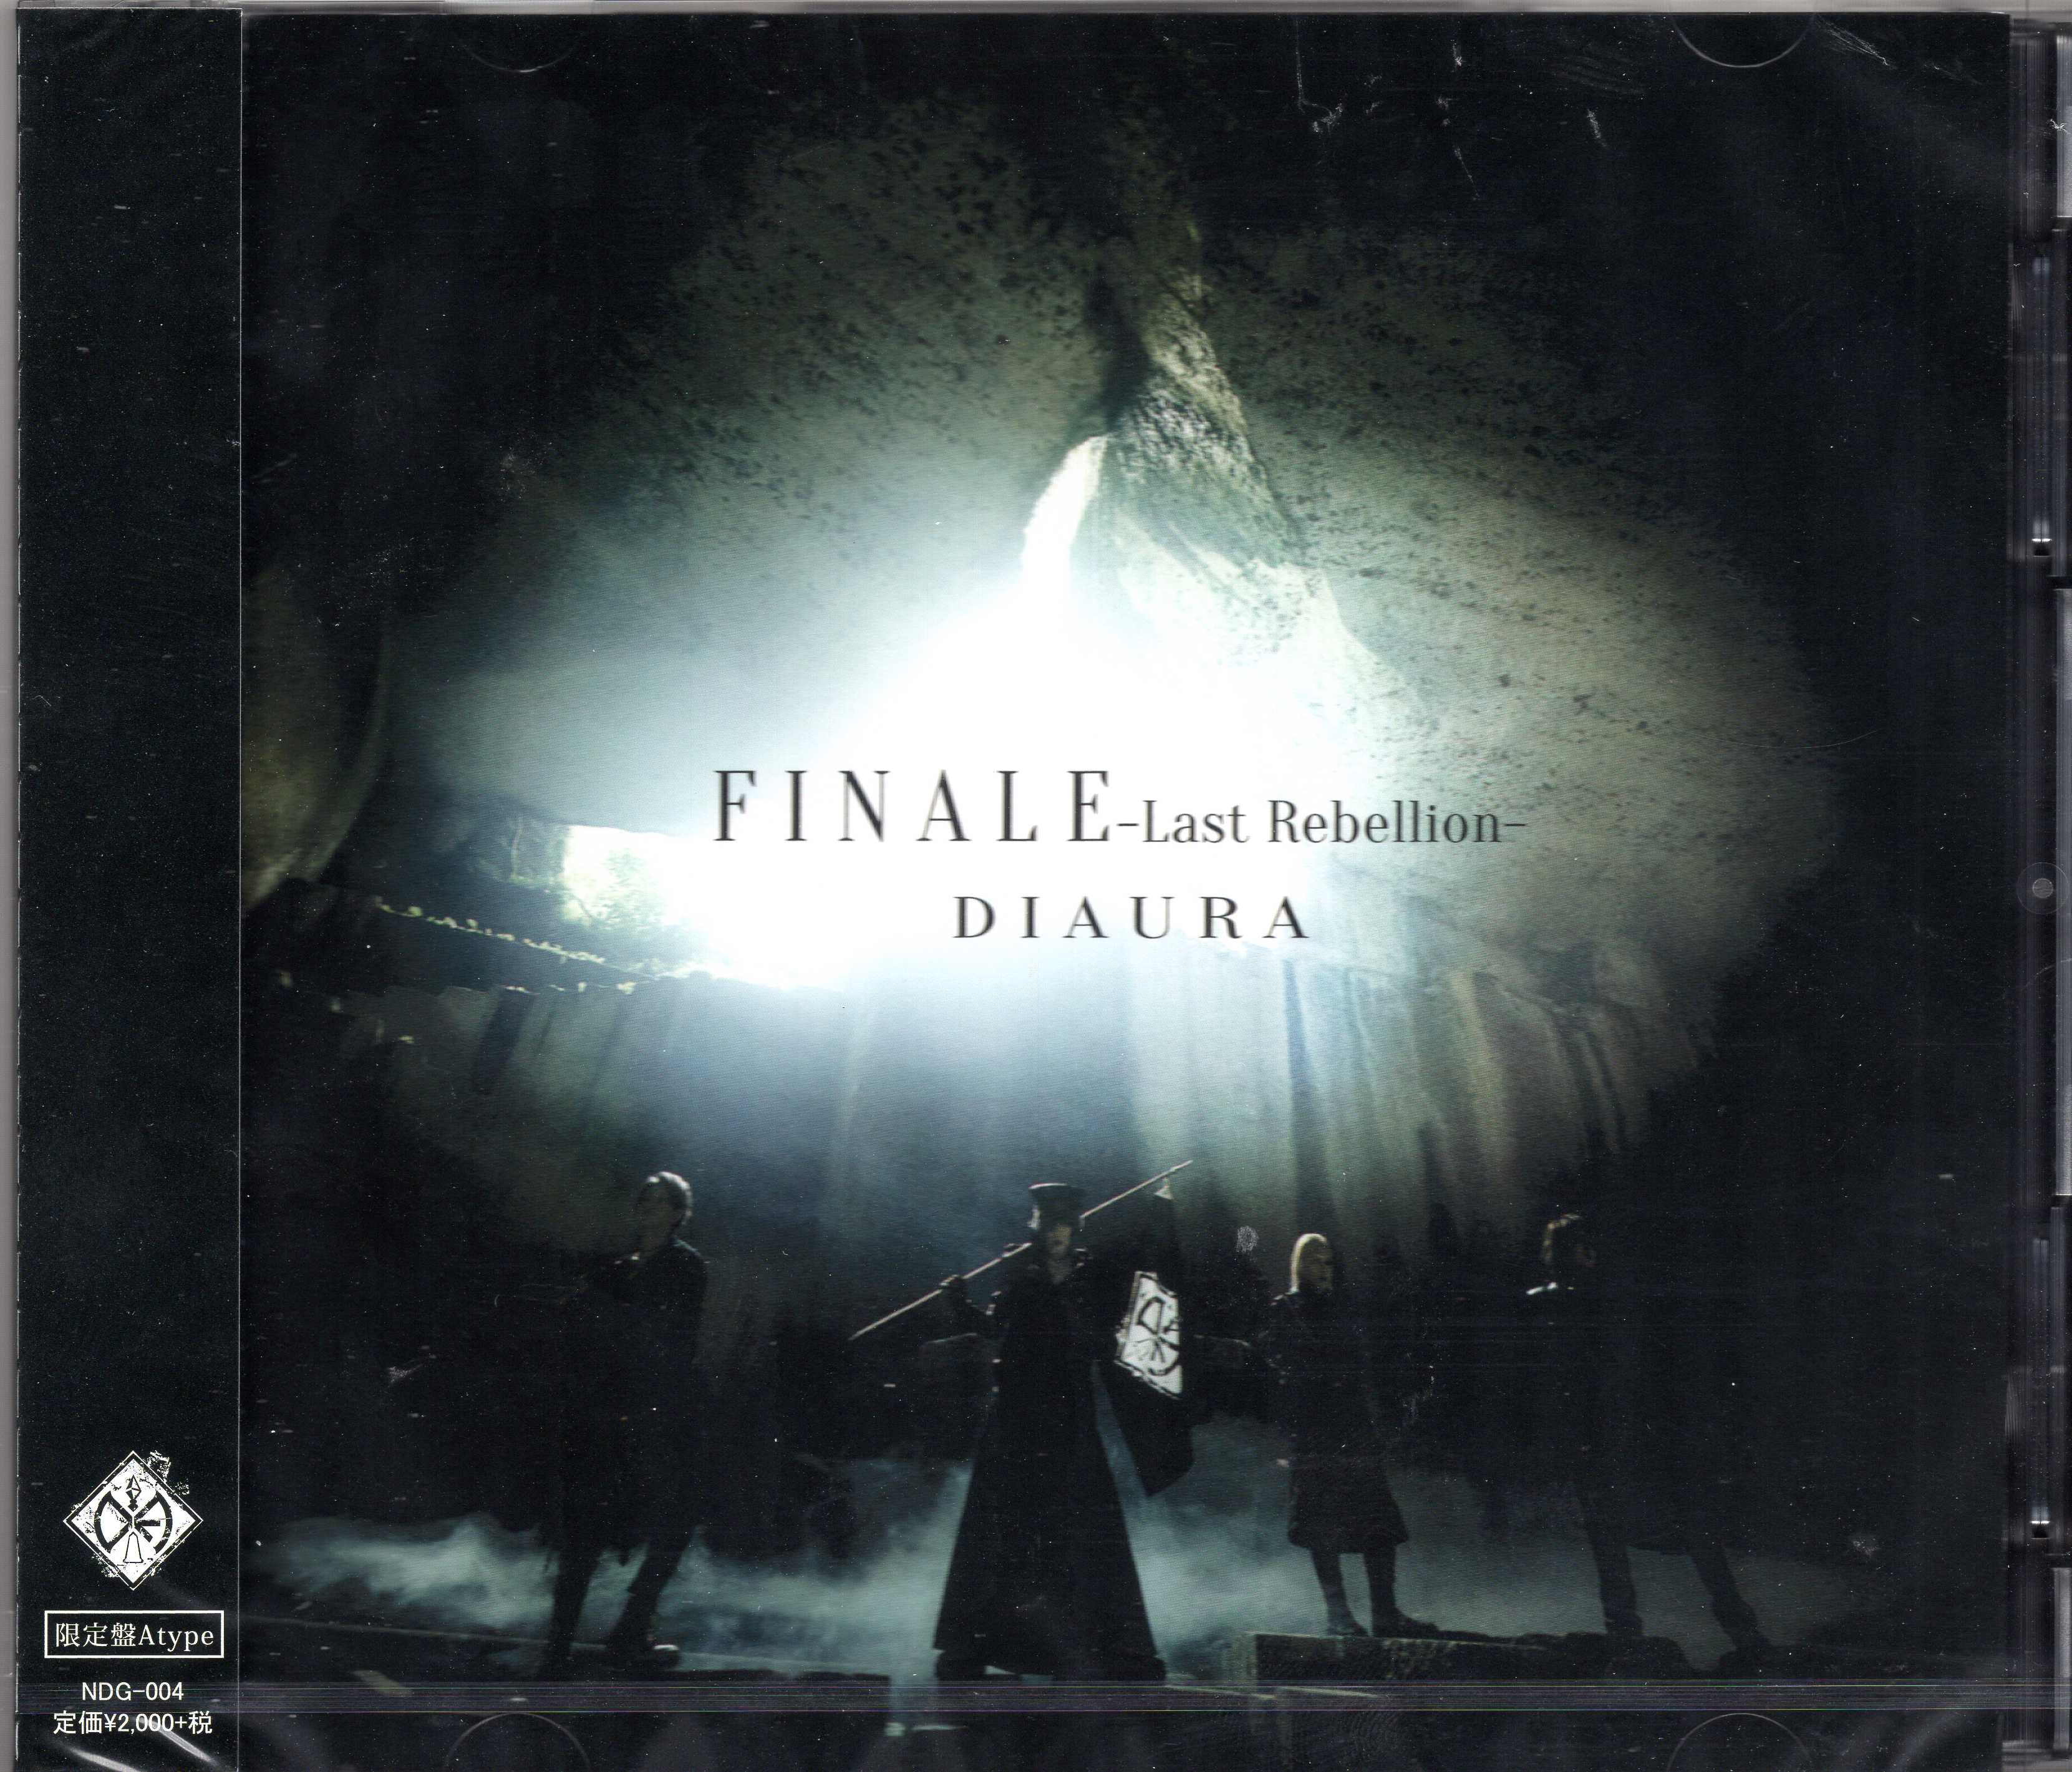 ディオーラ の CD 【A Type】FINALE-Last Rebellion-